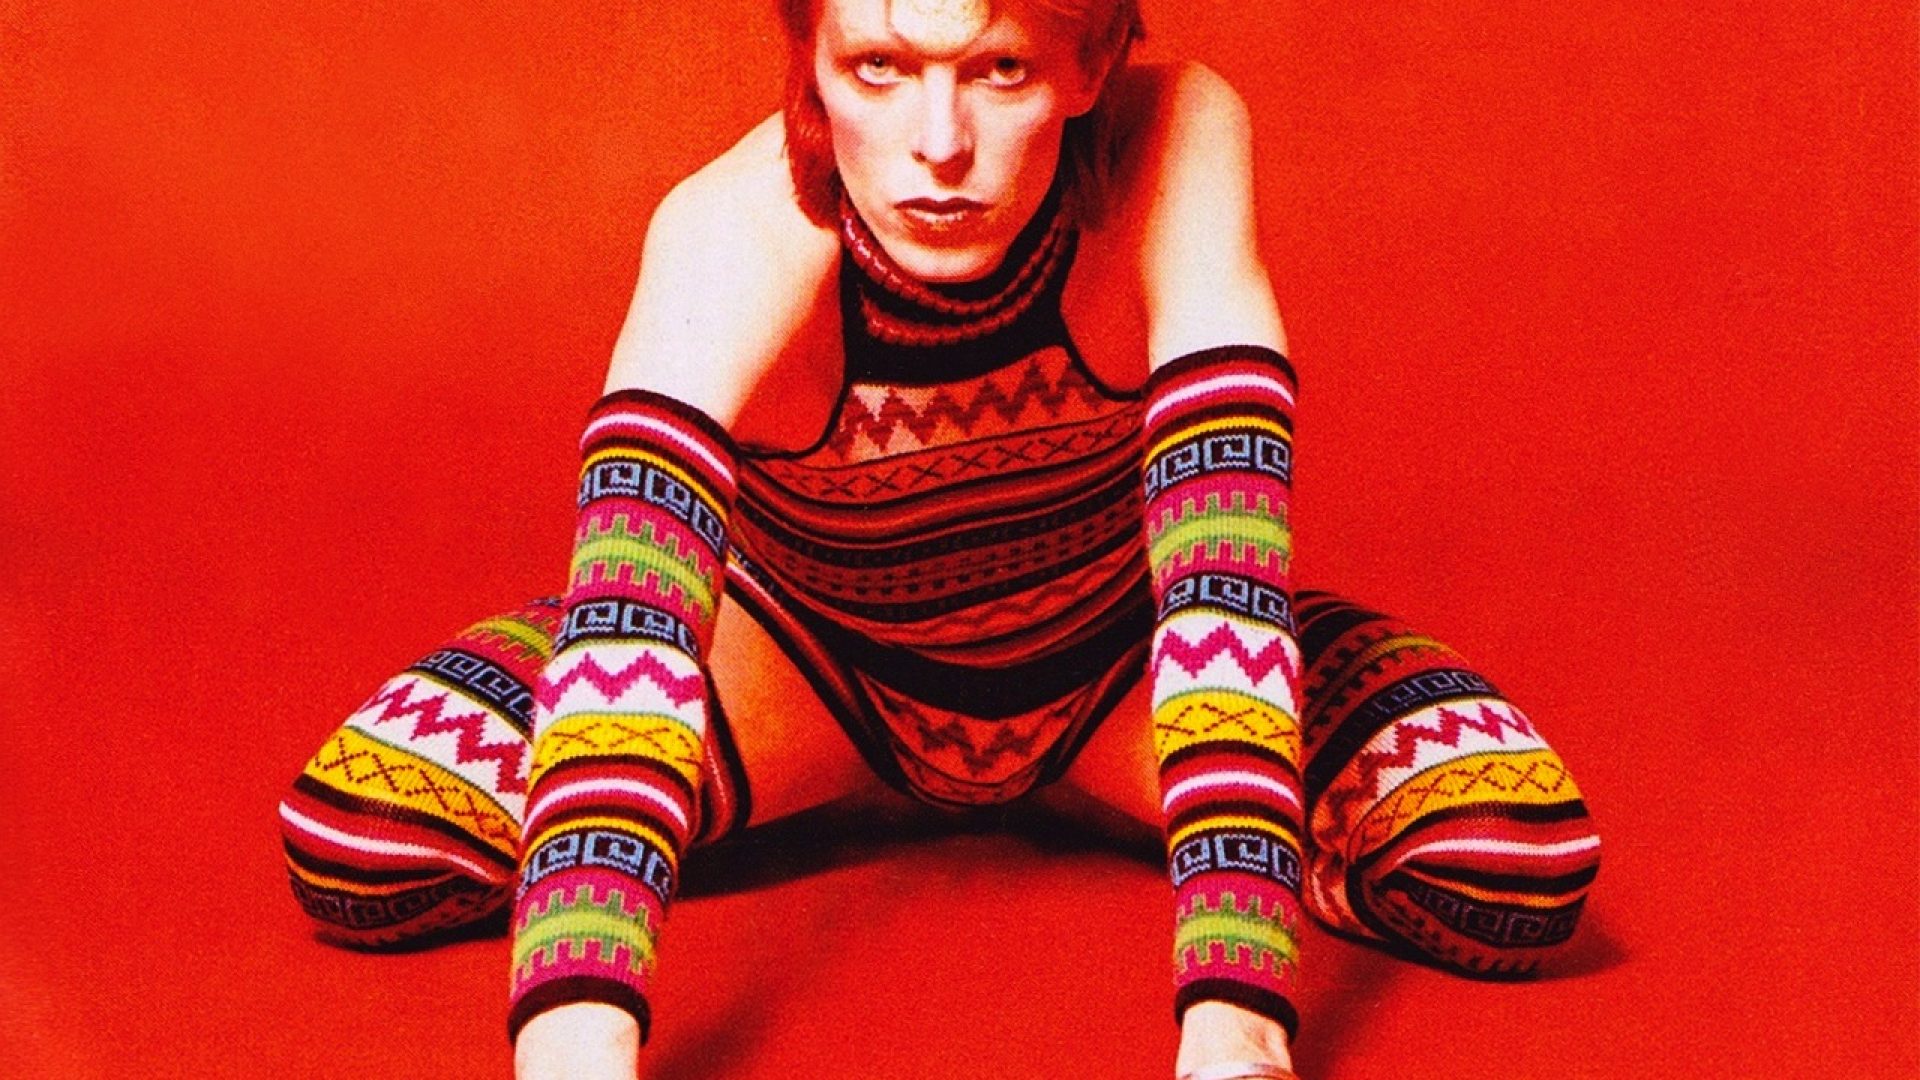 David Bowie / Ziggy Stardust 1973